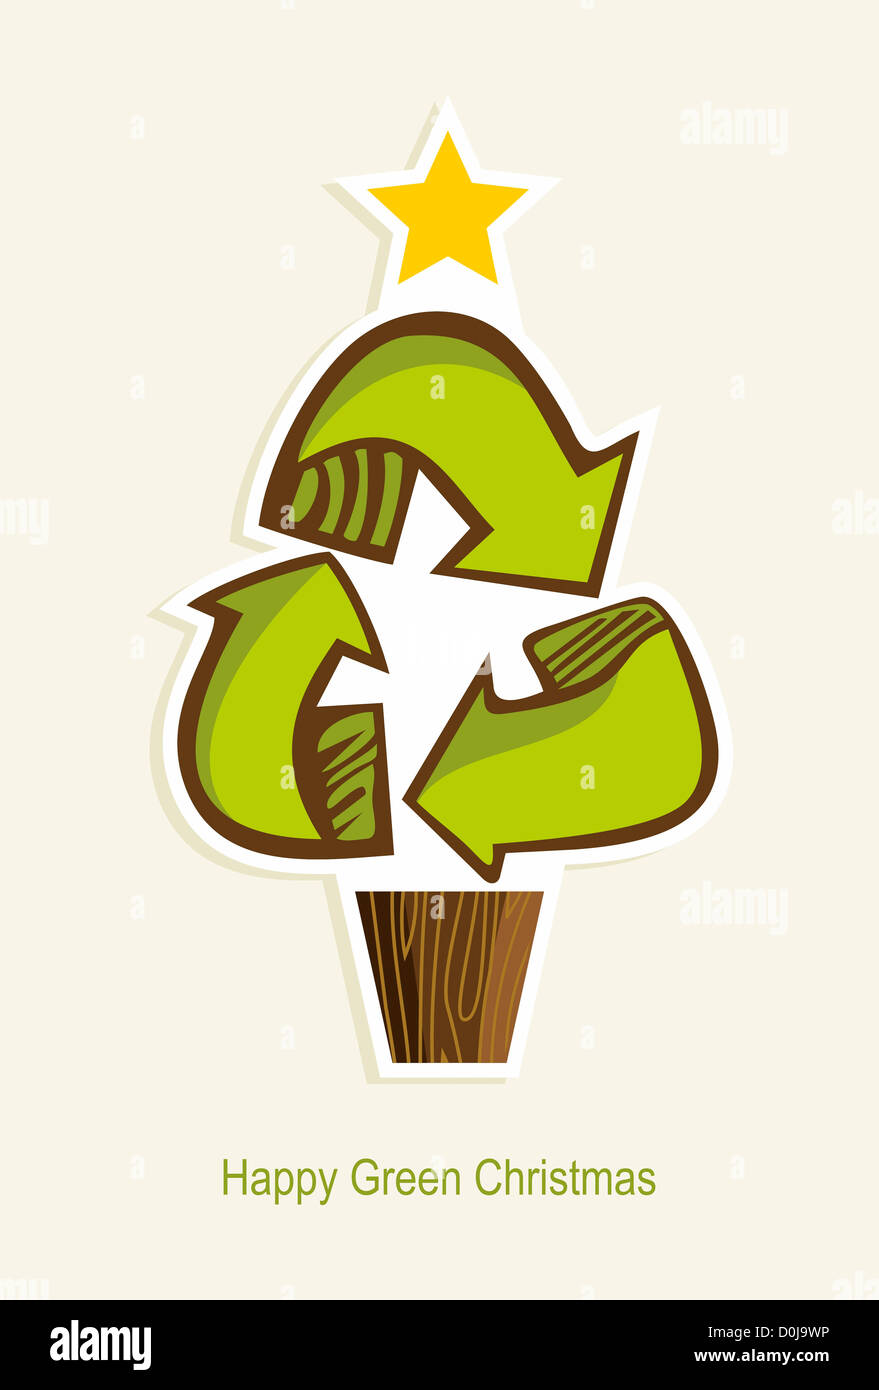 Green Recycling Symbol Weihnachtsbaum im Cartoon-Stil. Vektor-Illustration für einfache Handhabung und individuelle Färbung geschichtet. Stockfoto